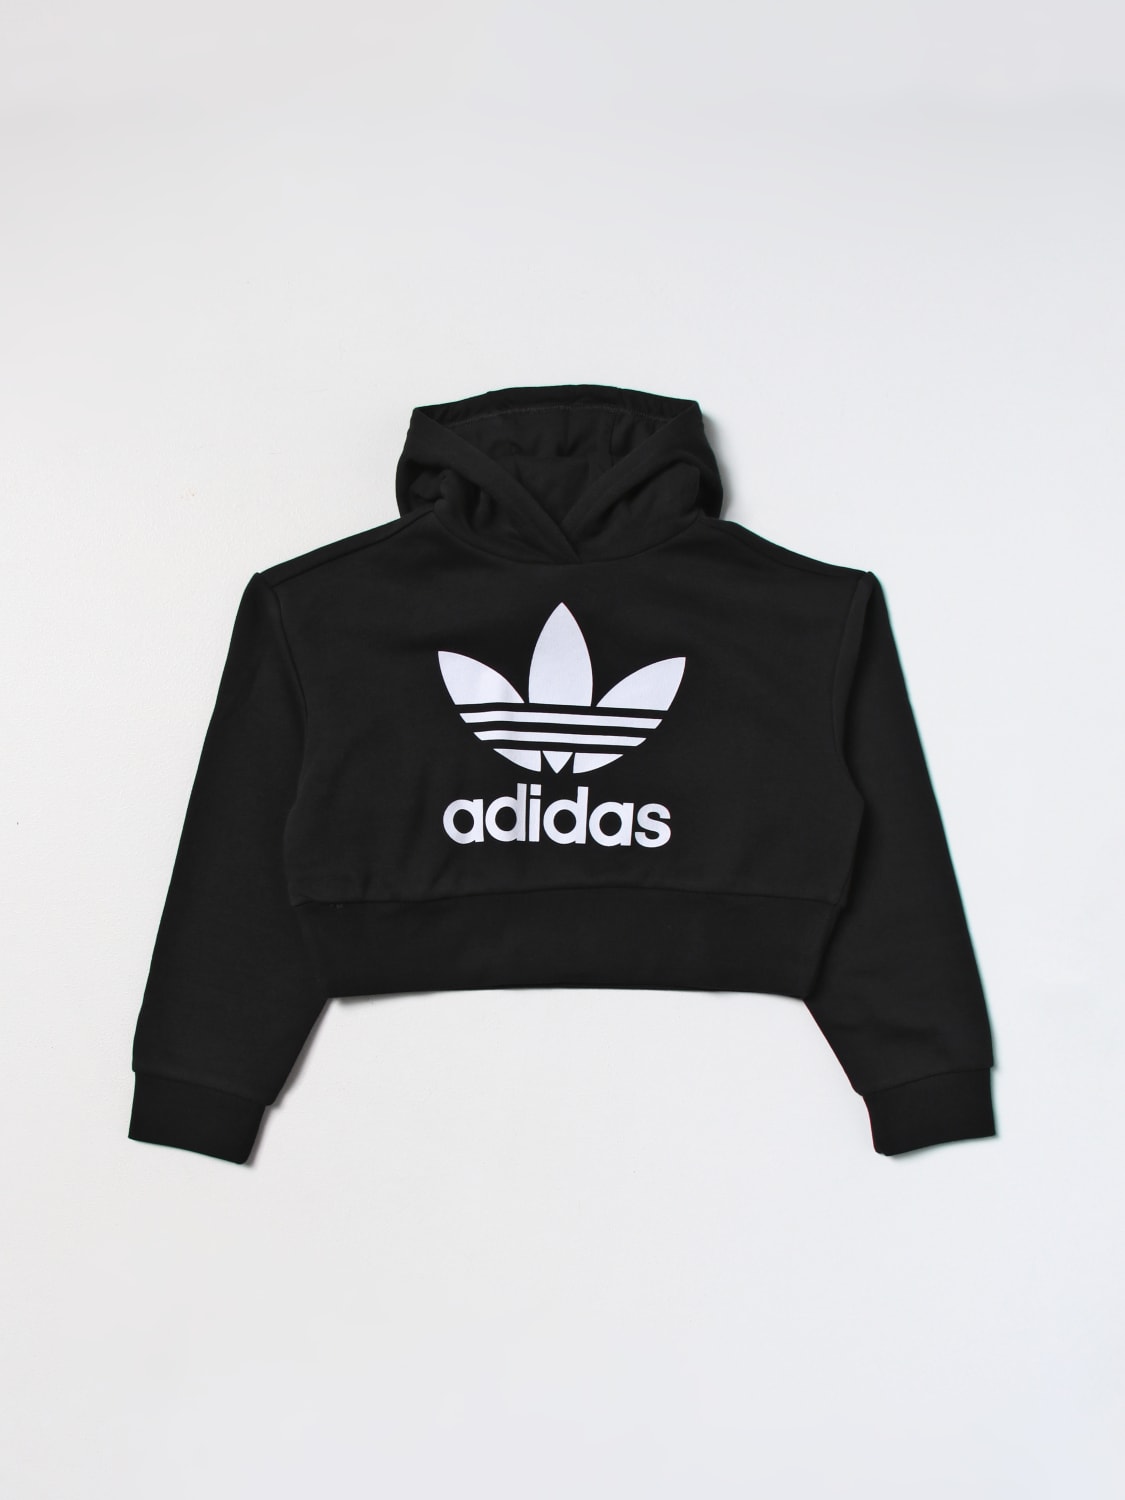 ADIDAS ORIGINALS: sweatshirt in cotton blend - Black | Adidas Originals  sweater IJ9719 online at